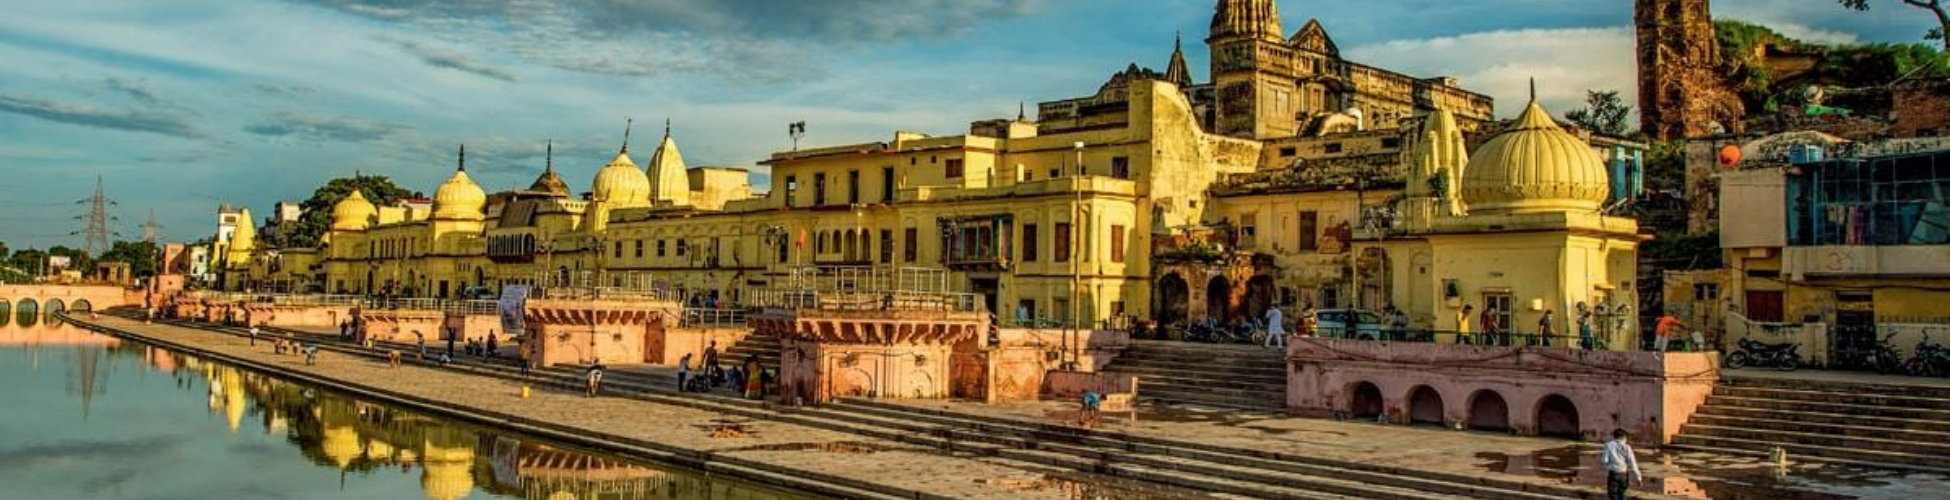 Varanasi Ayodhya Prayagraj Tour Package